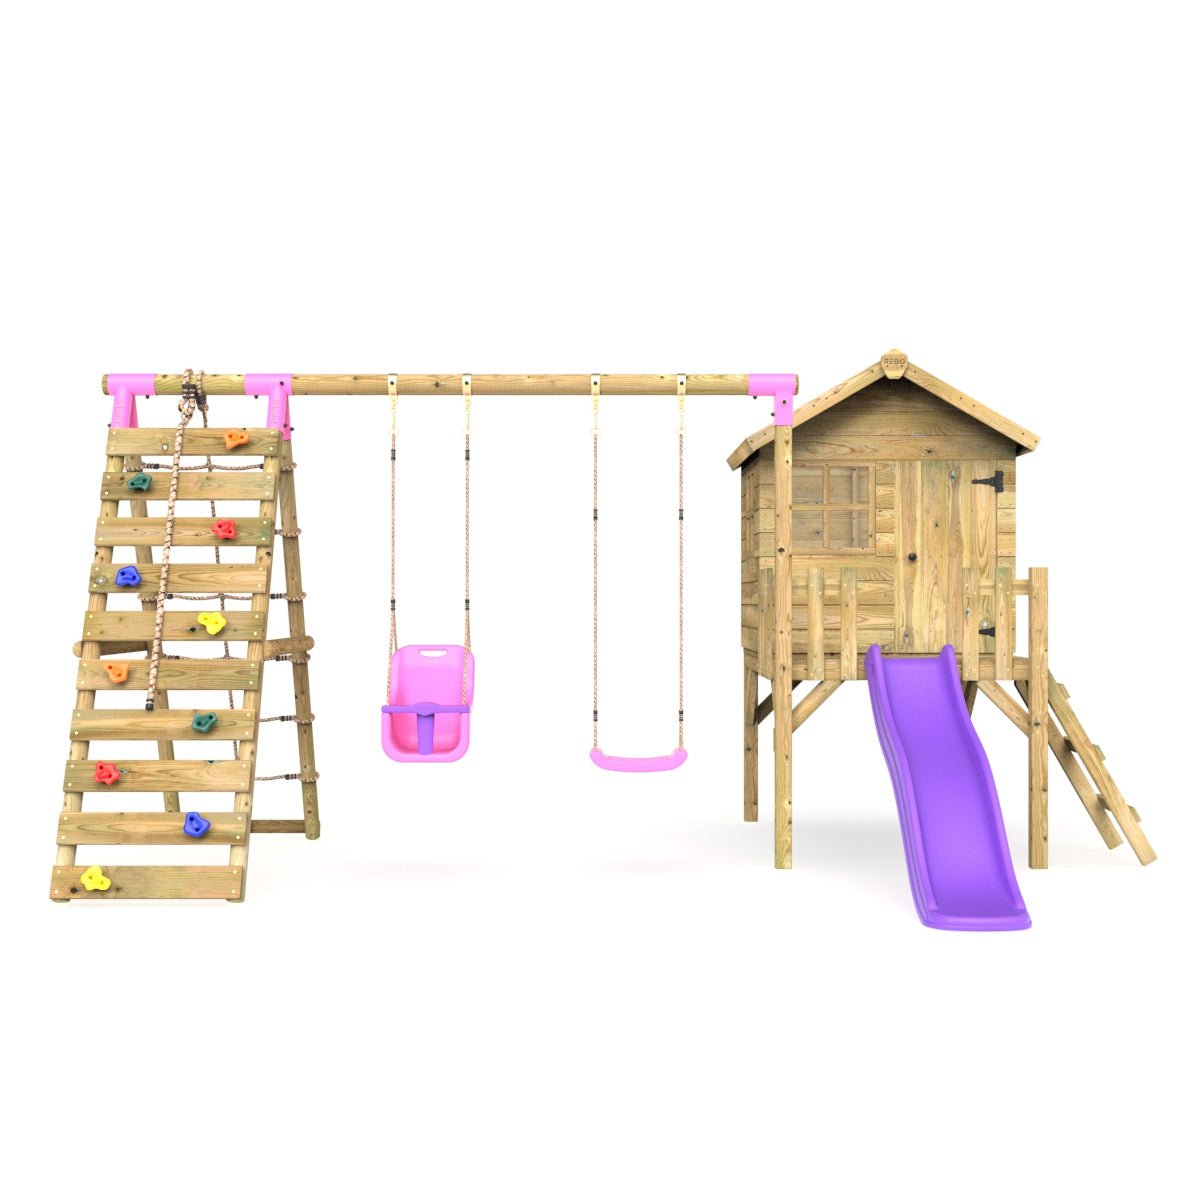 Rebo Orchard 4FT Wooden Playhouse + Swings, Rock Wall, Deck & 6FT Slide – Luna Purple